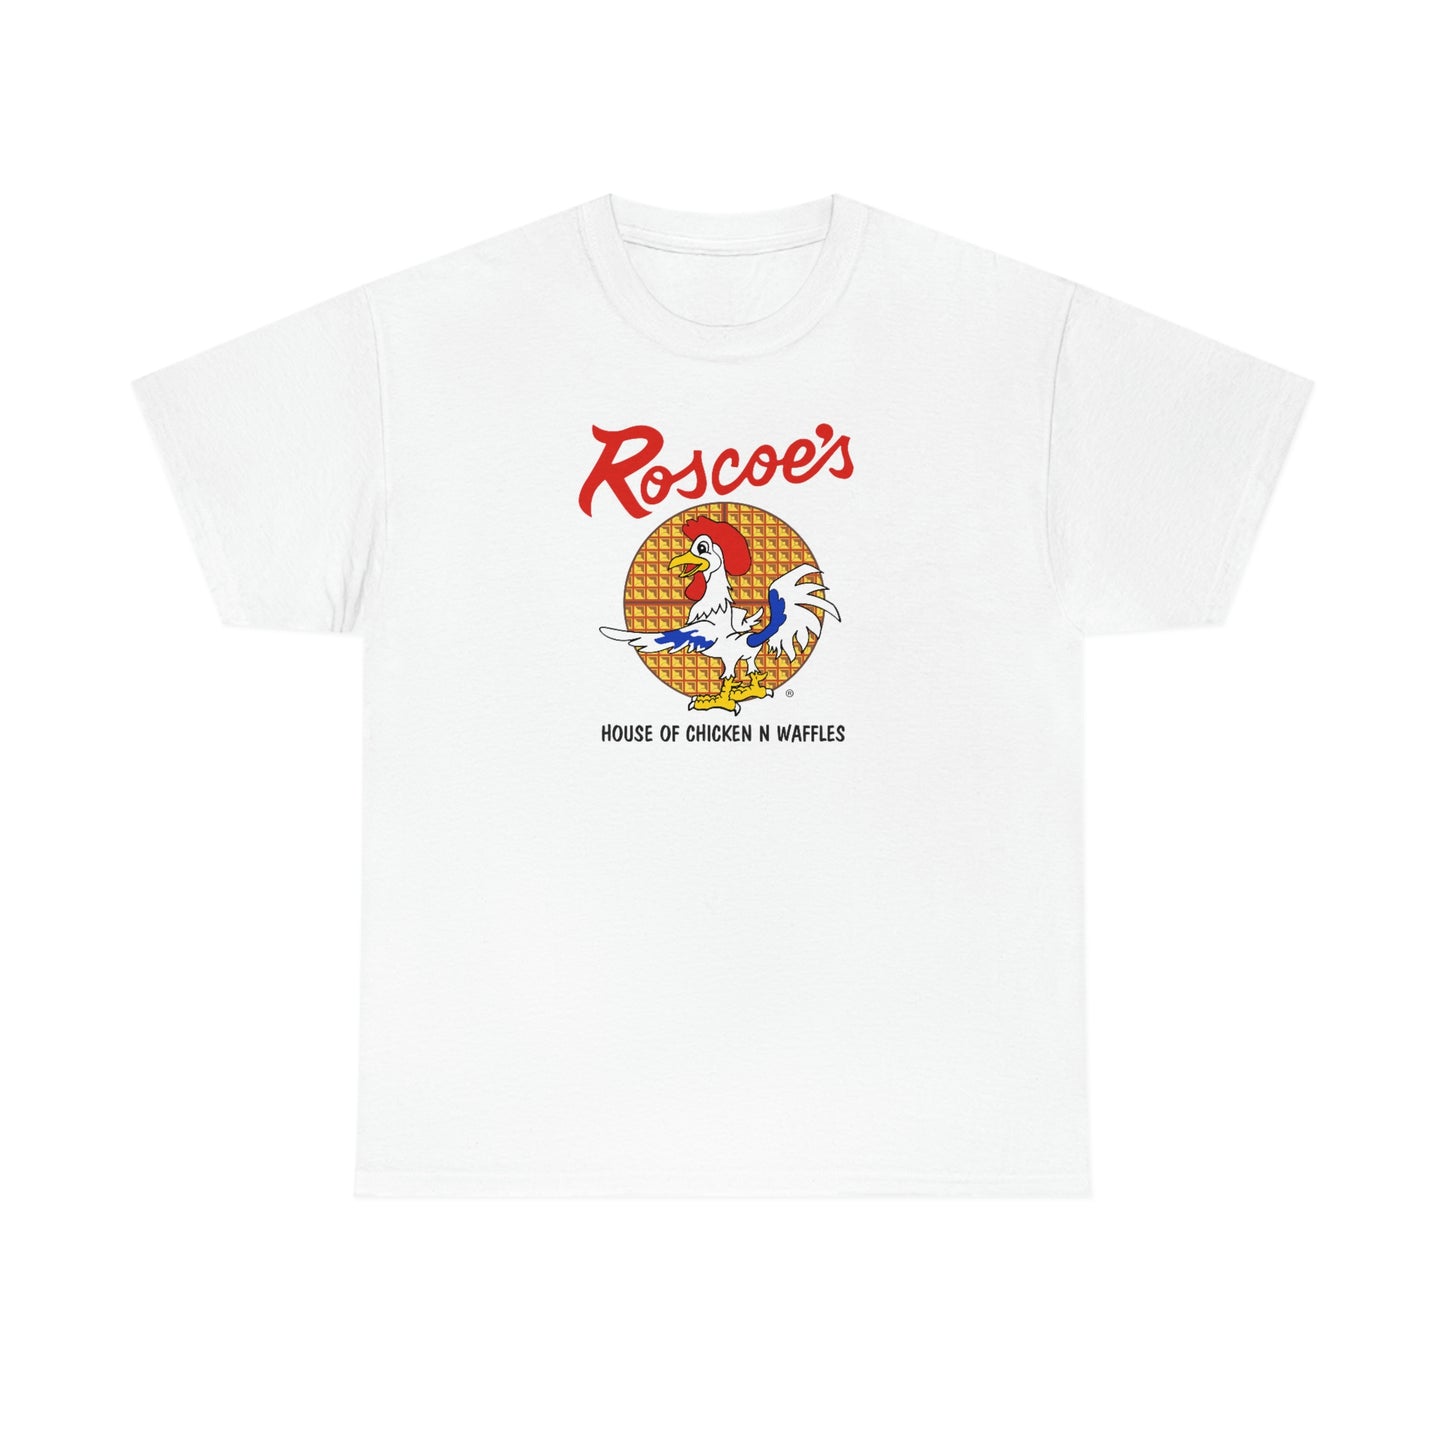 Rosco's T-shirt